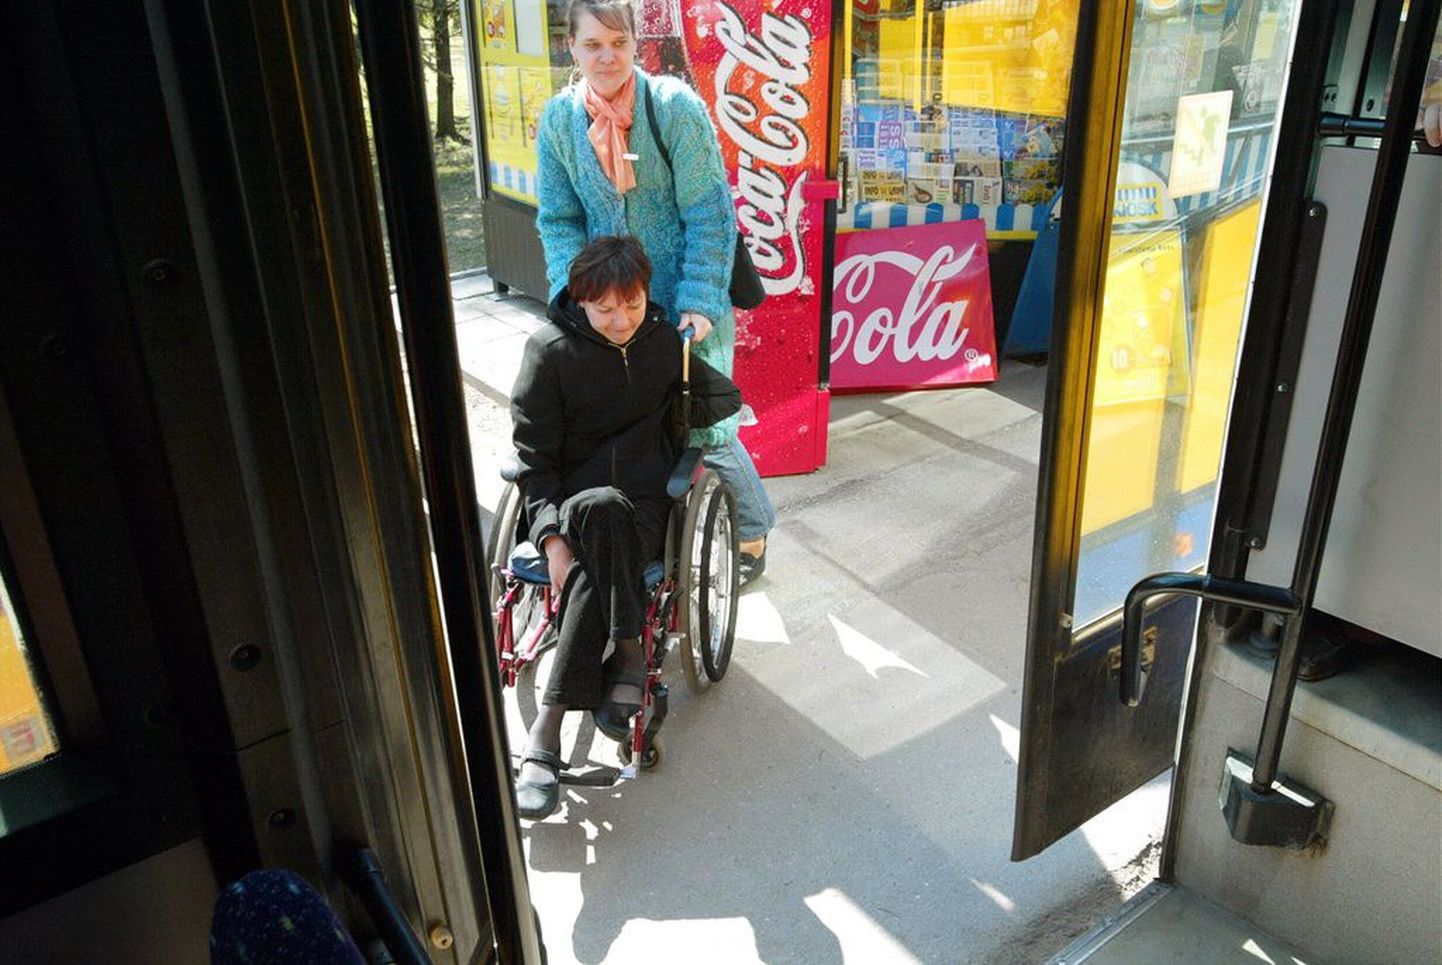 Tartus napib puudega inimeste abistajaid. Pildil noorteklubi Händikäpp 2004. aasta aktsioon «Transport kõigile», mille käigus liikumis- ja nägemispuudega inimesed sõitsid madalapõhjaliste bussidega.